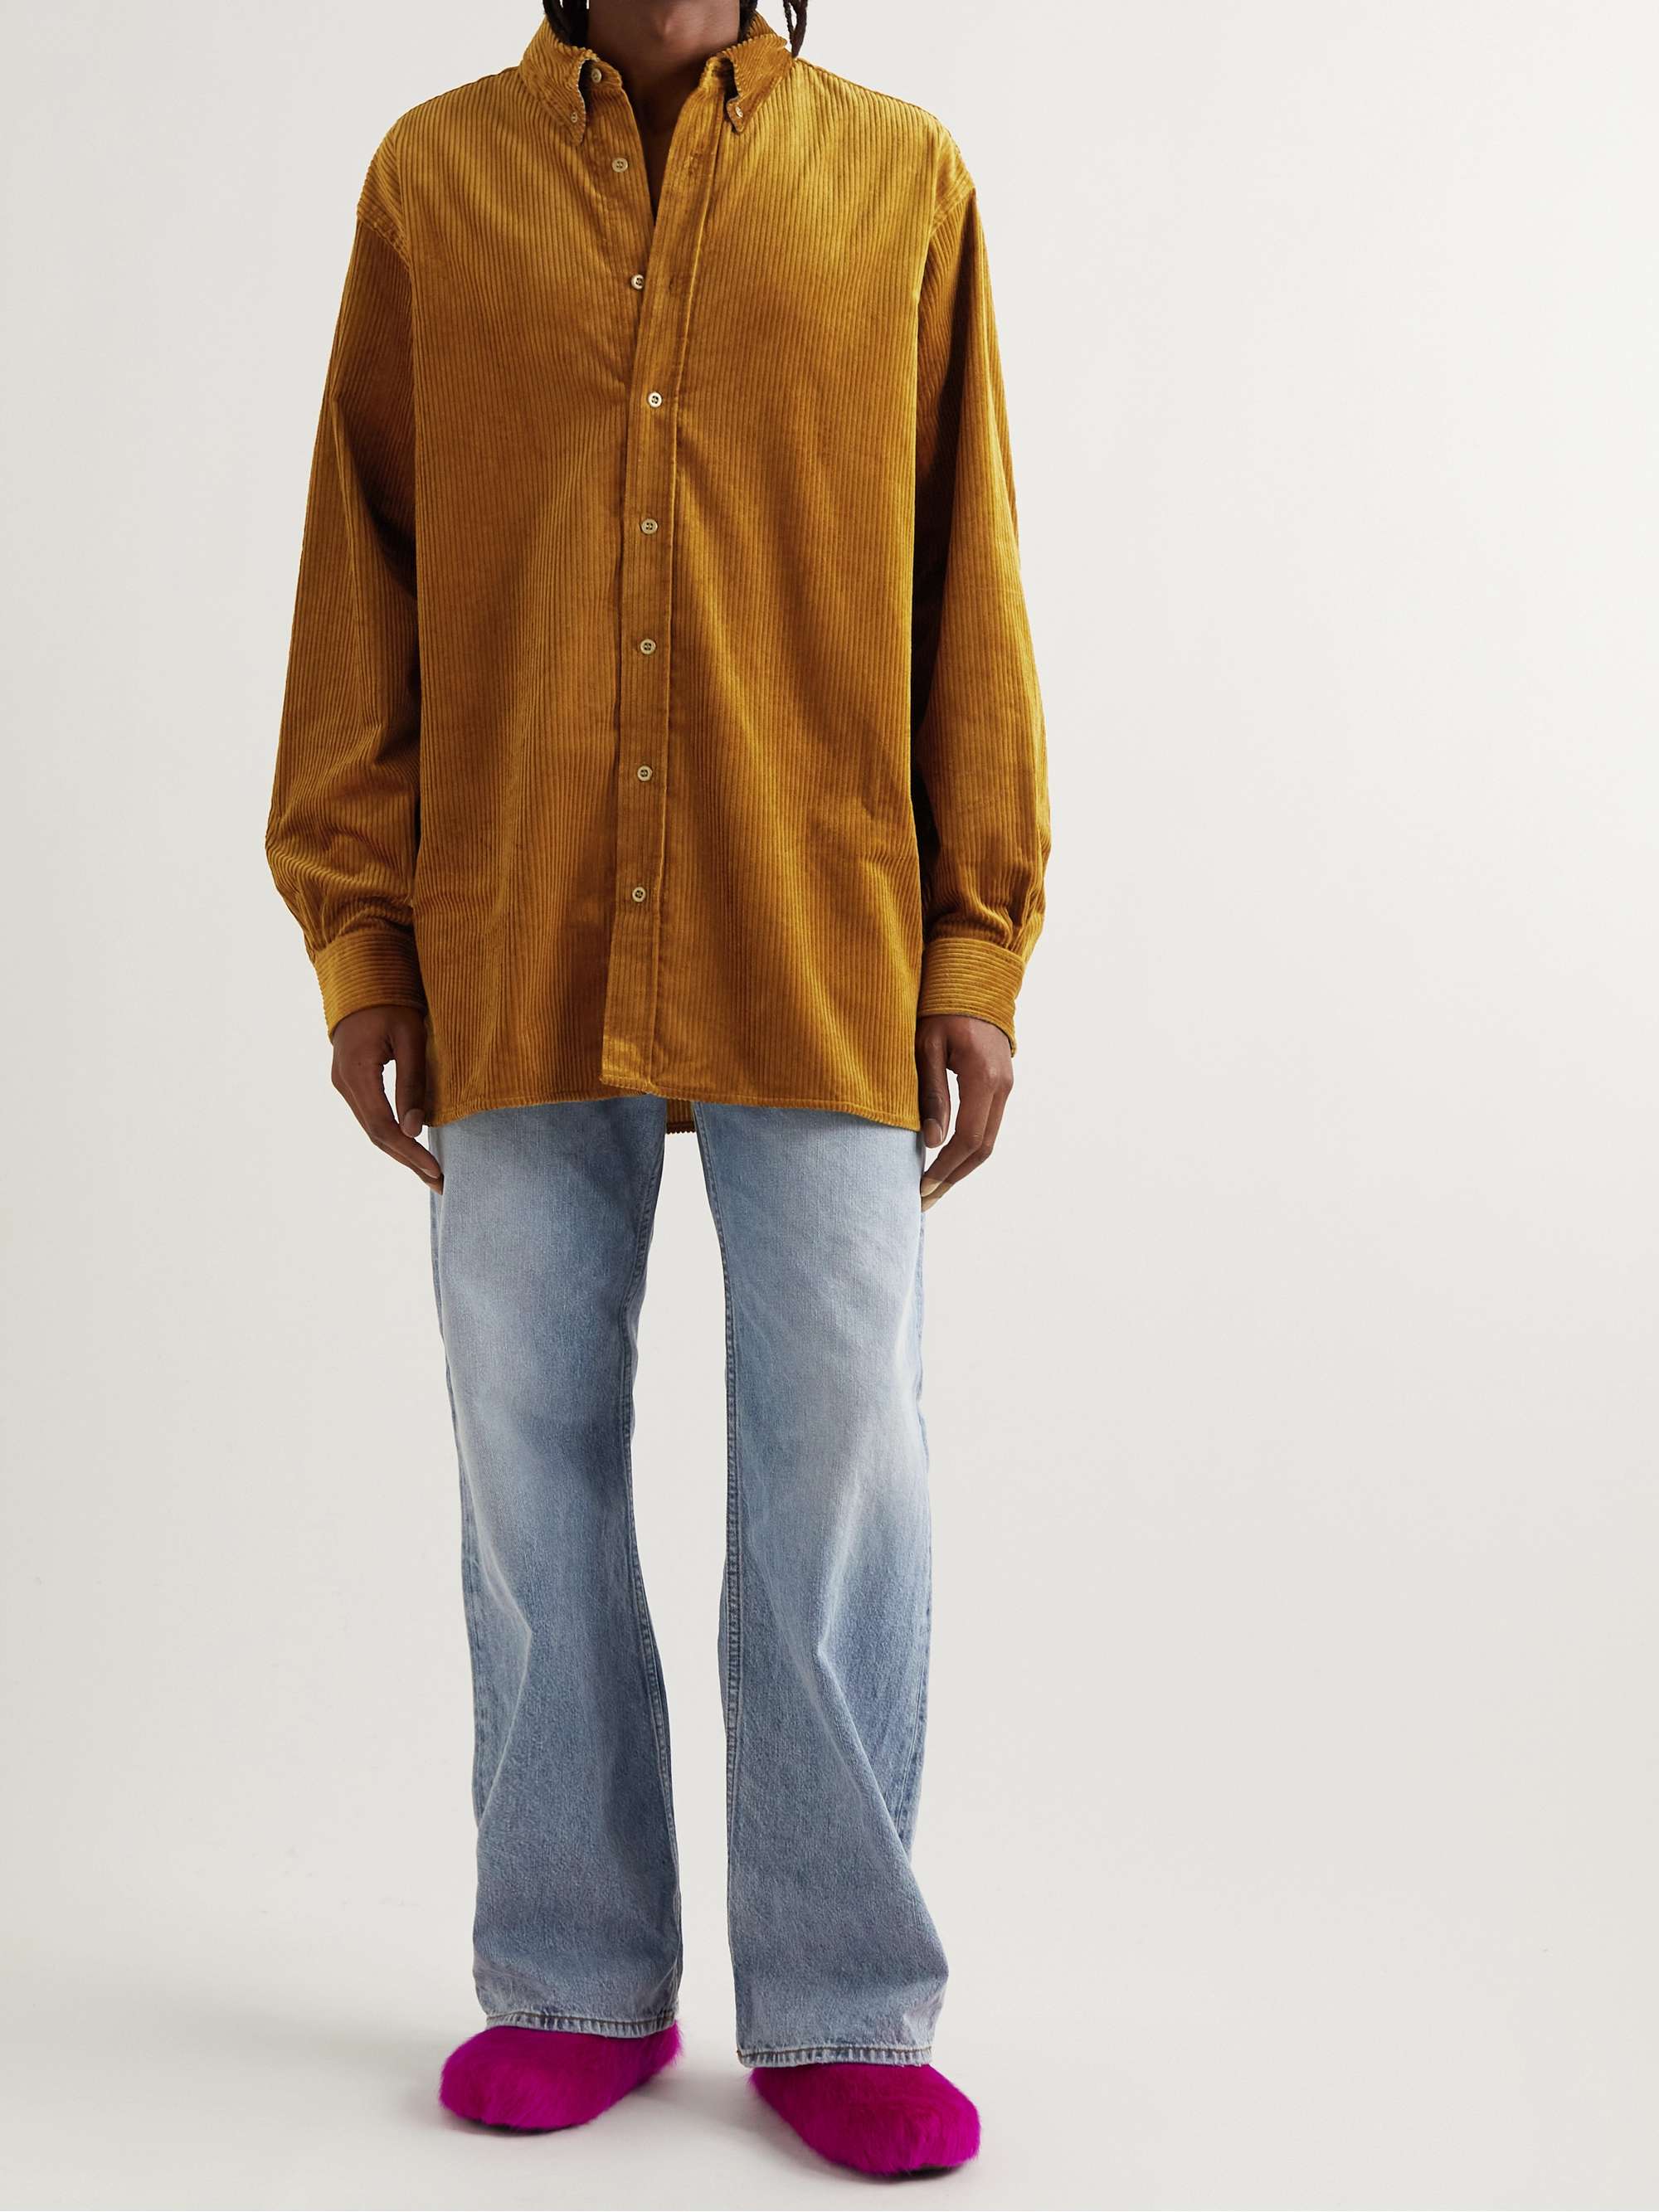 ACNE STUDIOS Button-Down Collar Cotton-Corduroy Shirt